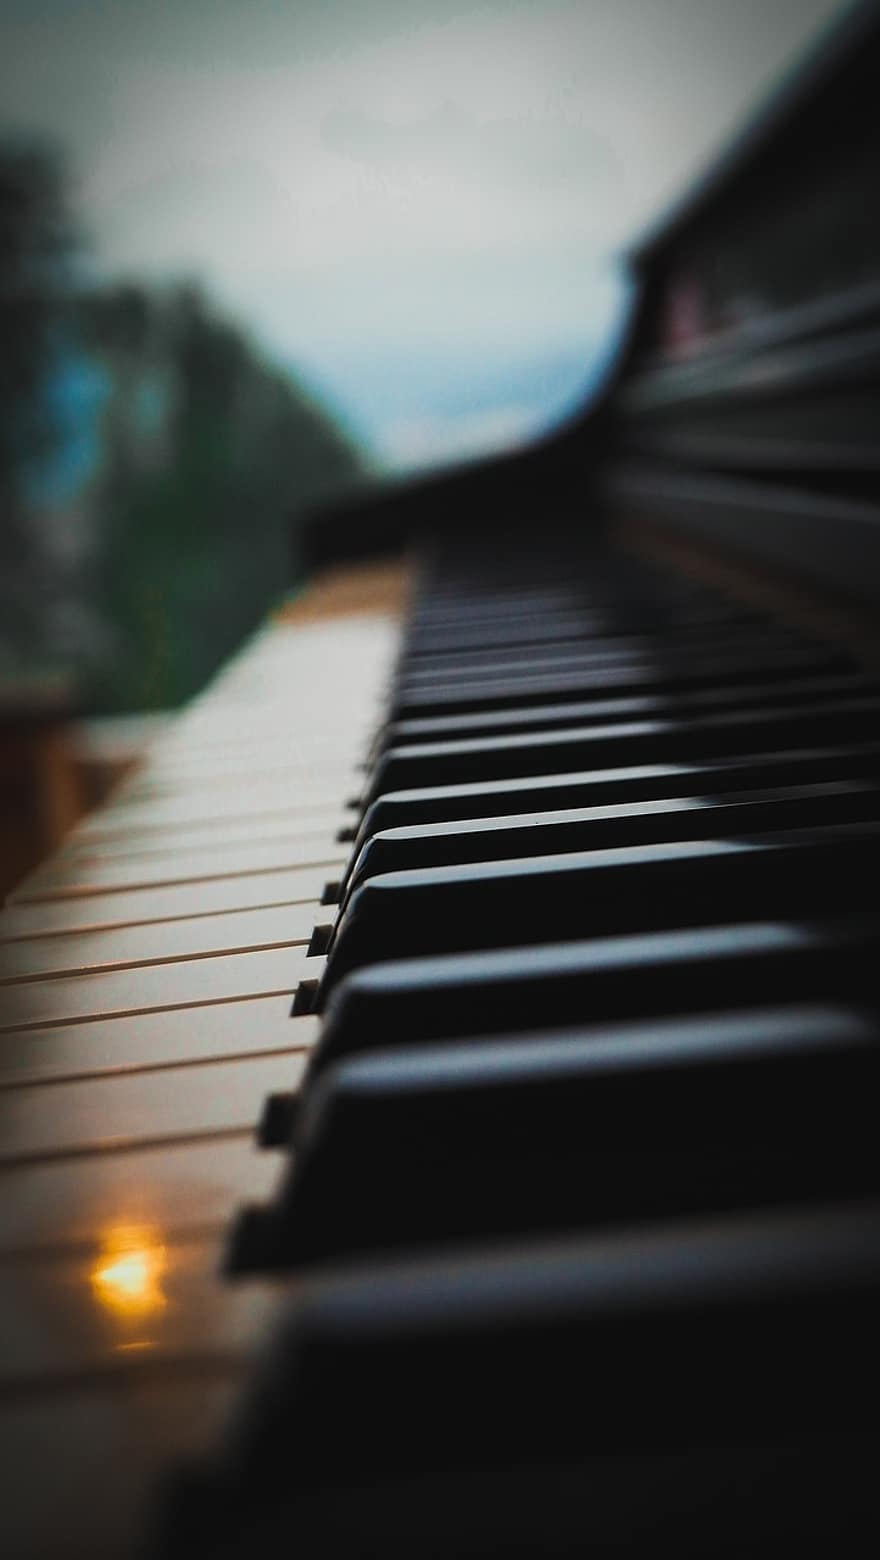 piano, naturaleza, de cerca, música, instrumento musical, tecla del piano, músico, aprendizaje, practicando, llave, acorde